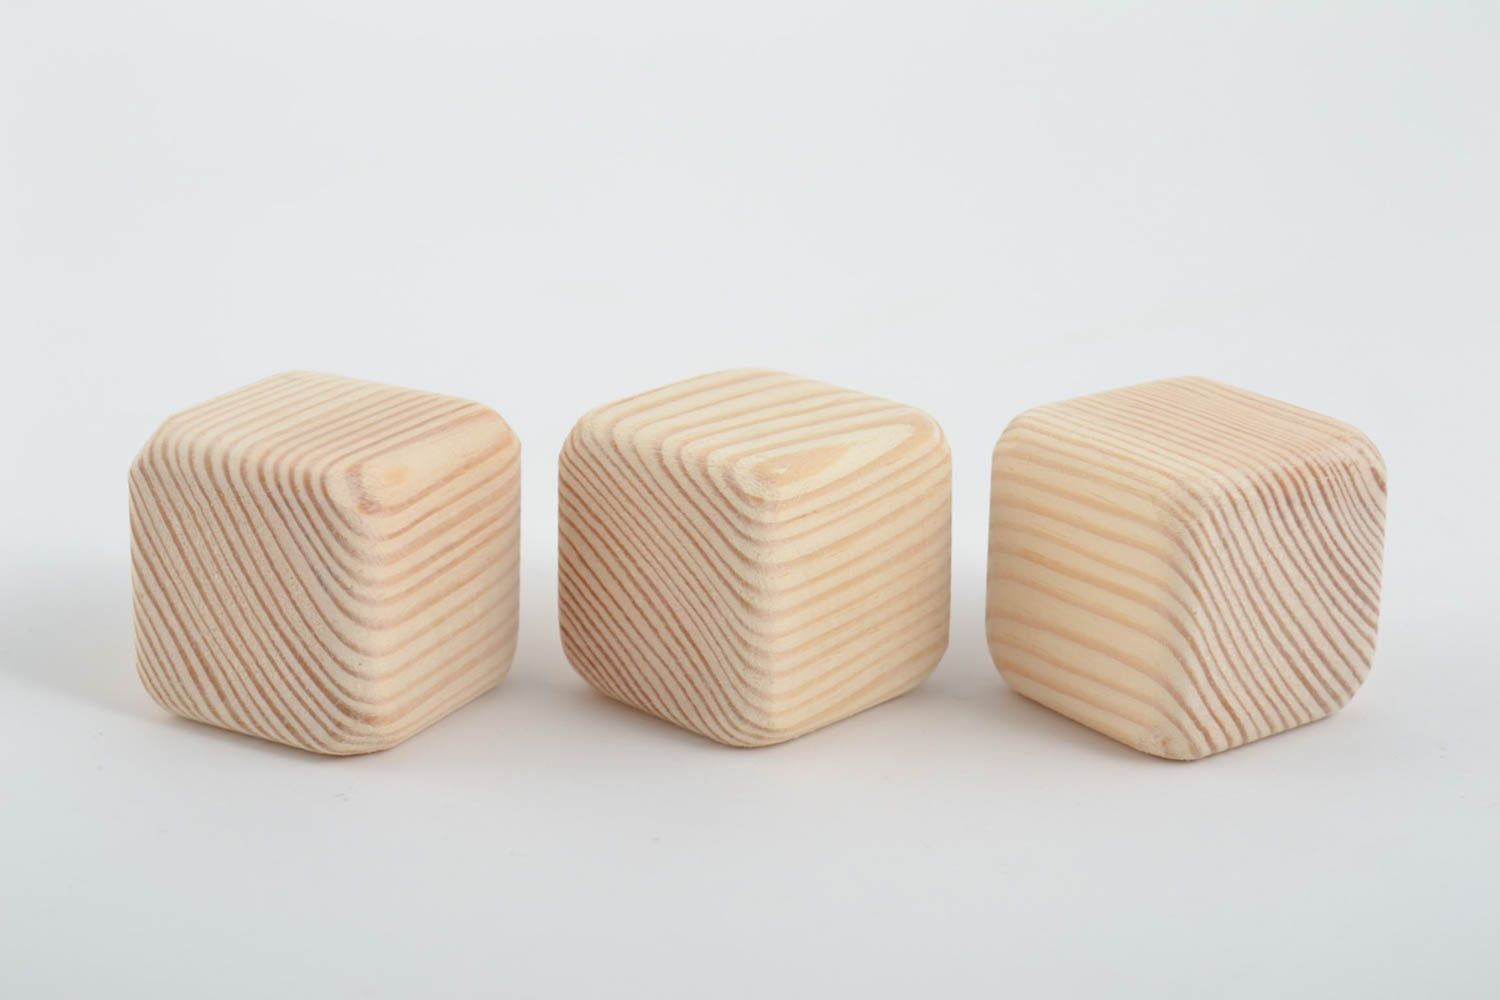 Три заготовки под роспись игрушки кубики ручной работы из натурального дерева фото 4